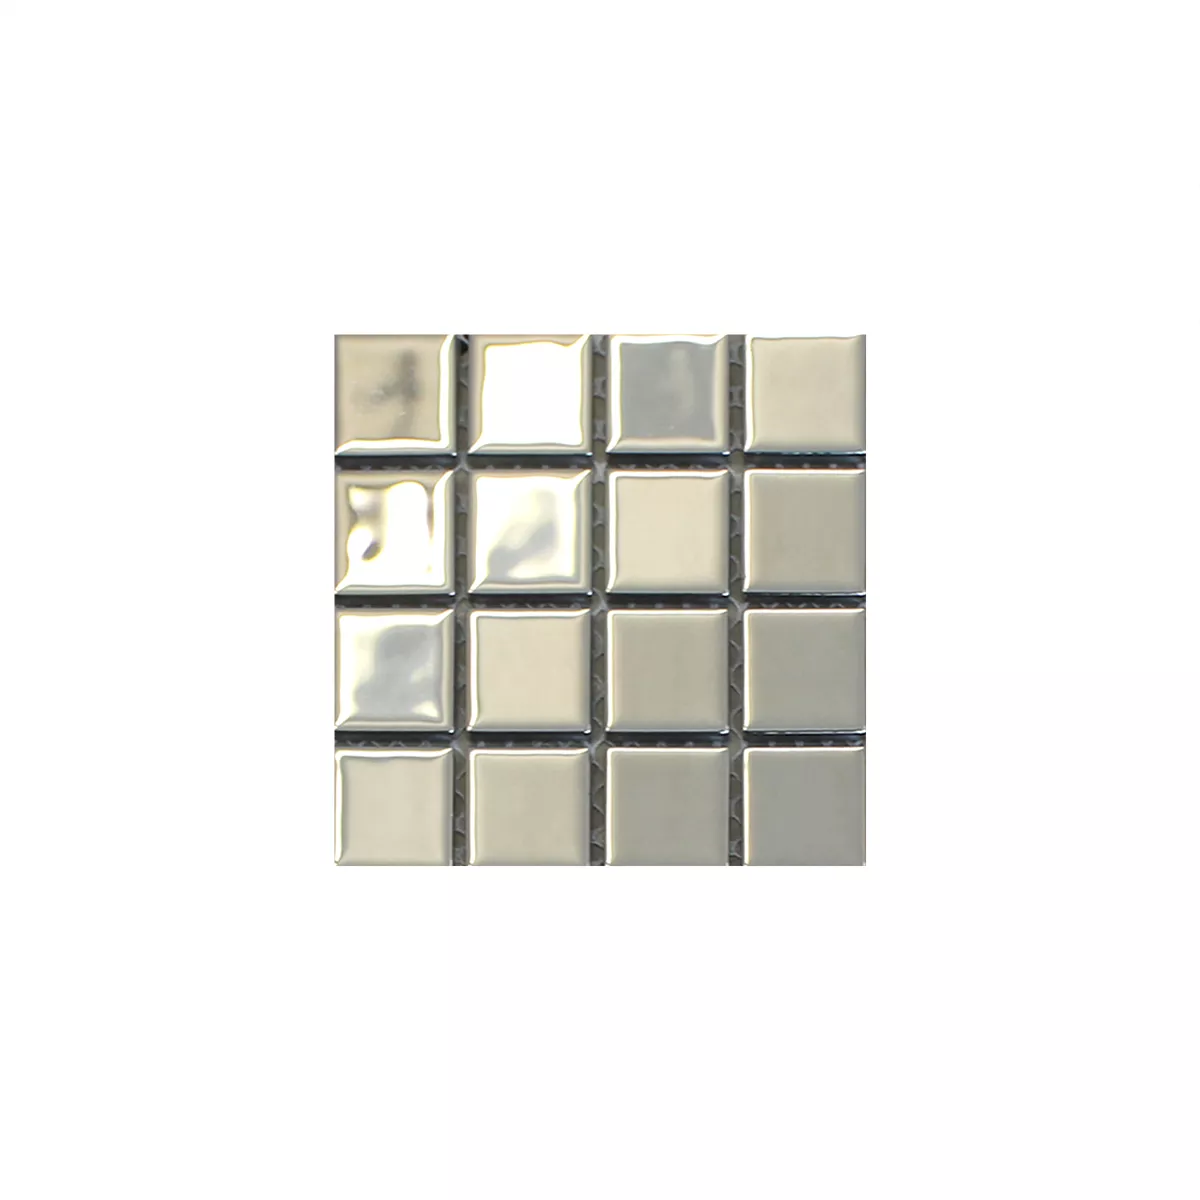 Próbka Mozaika Szklana Płytki Srebrny Uni 25x25x4mm